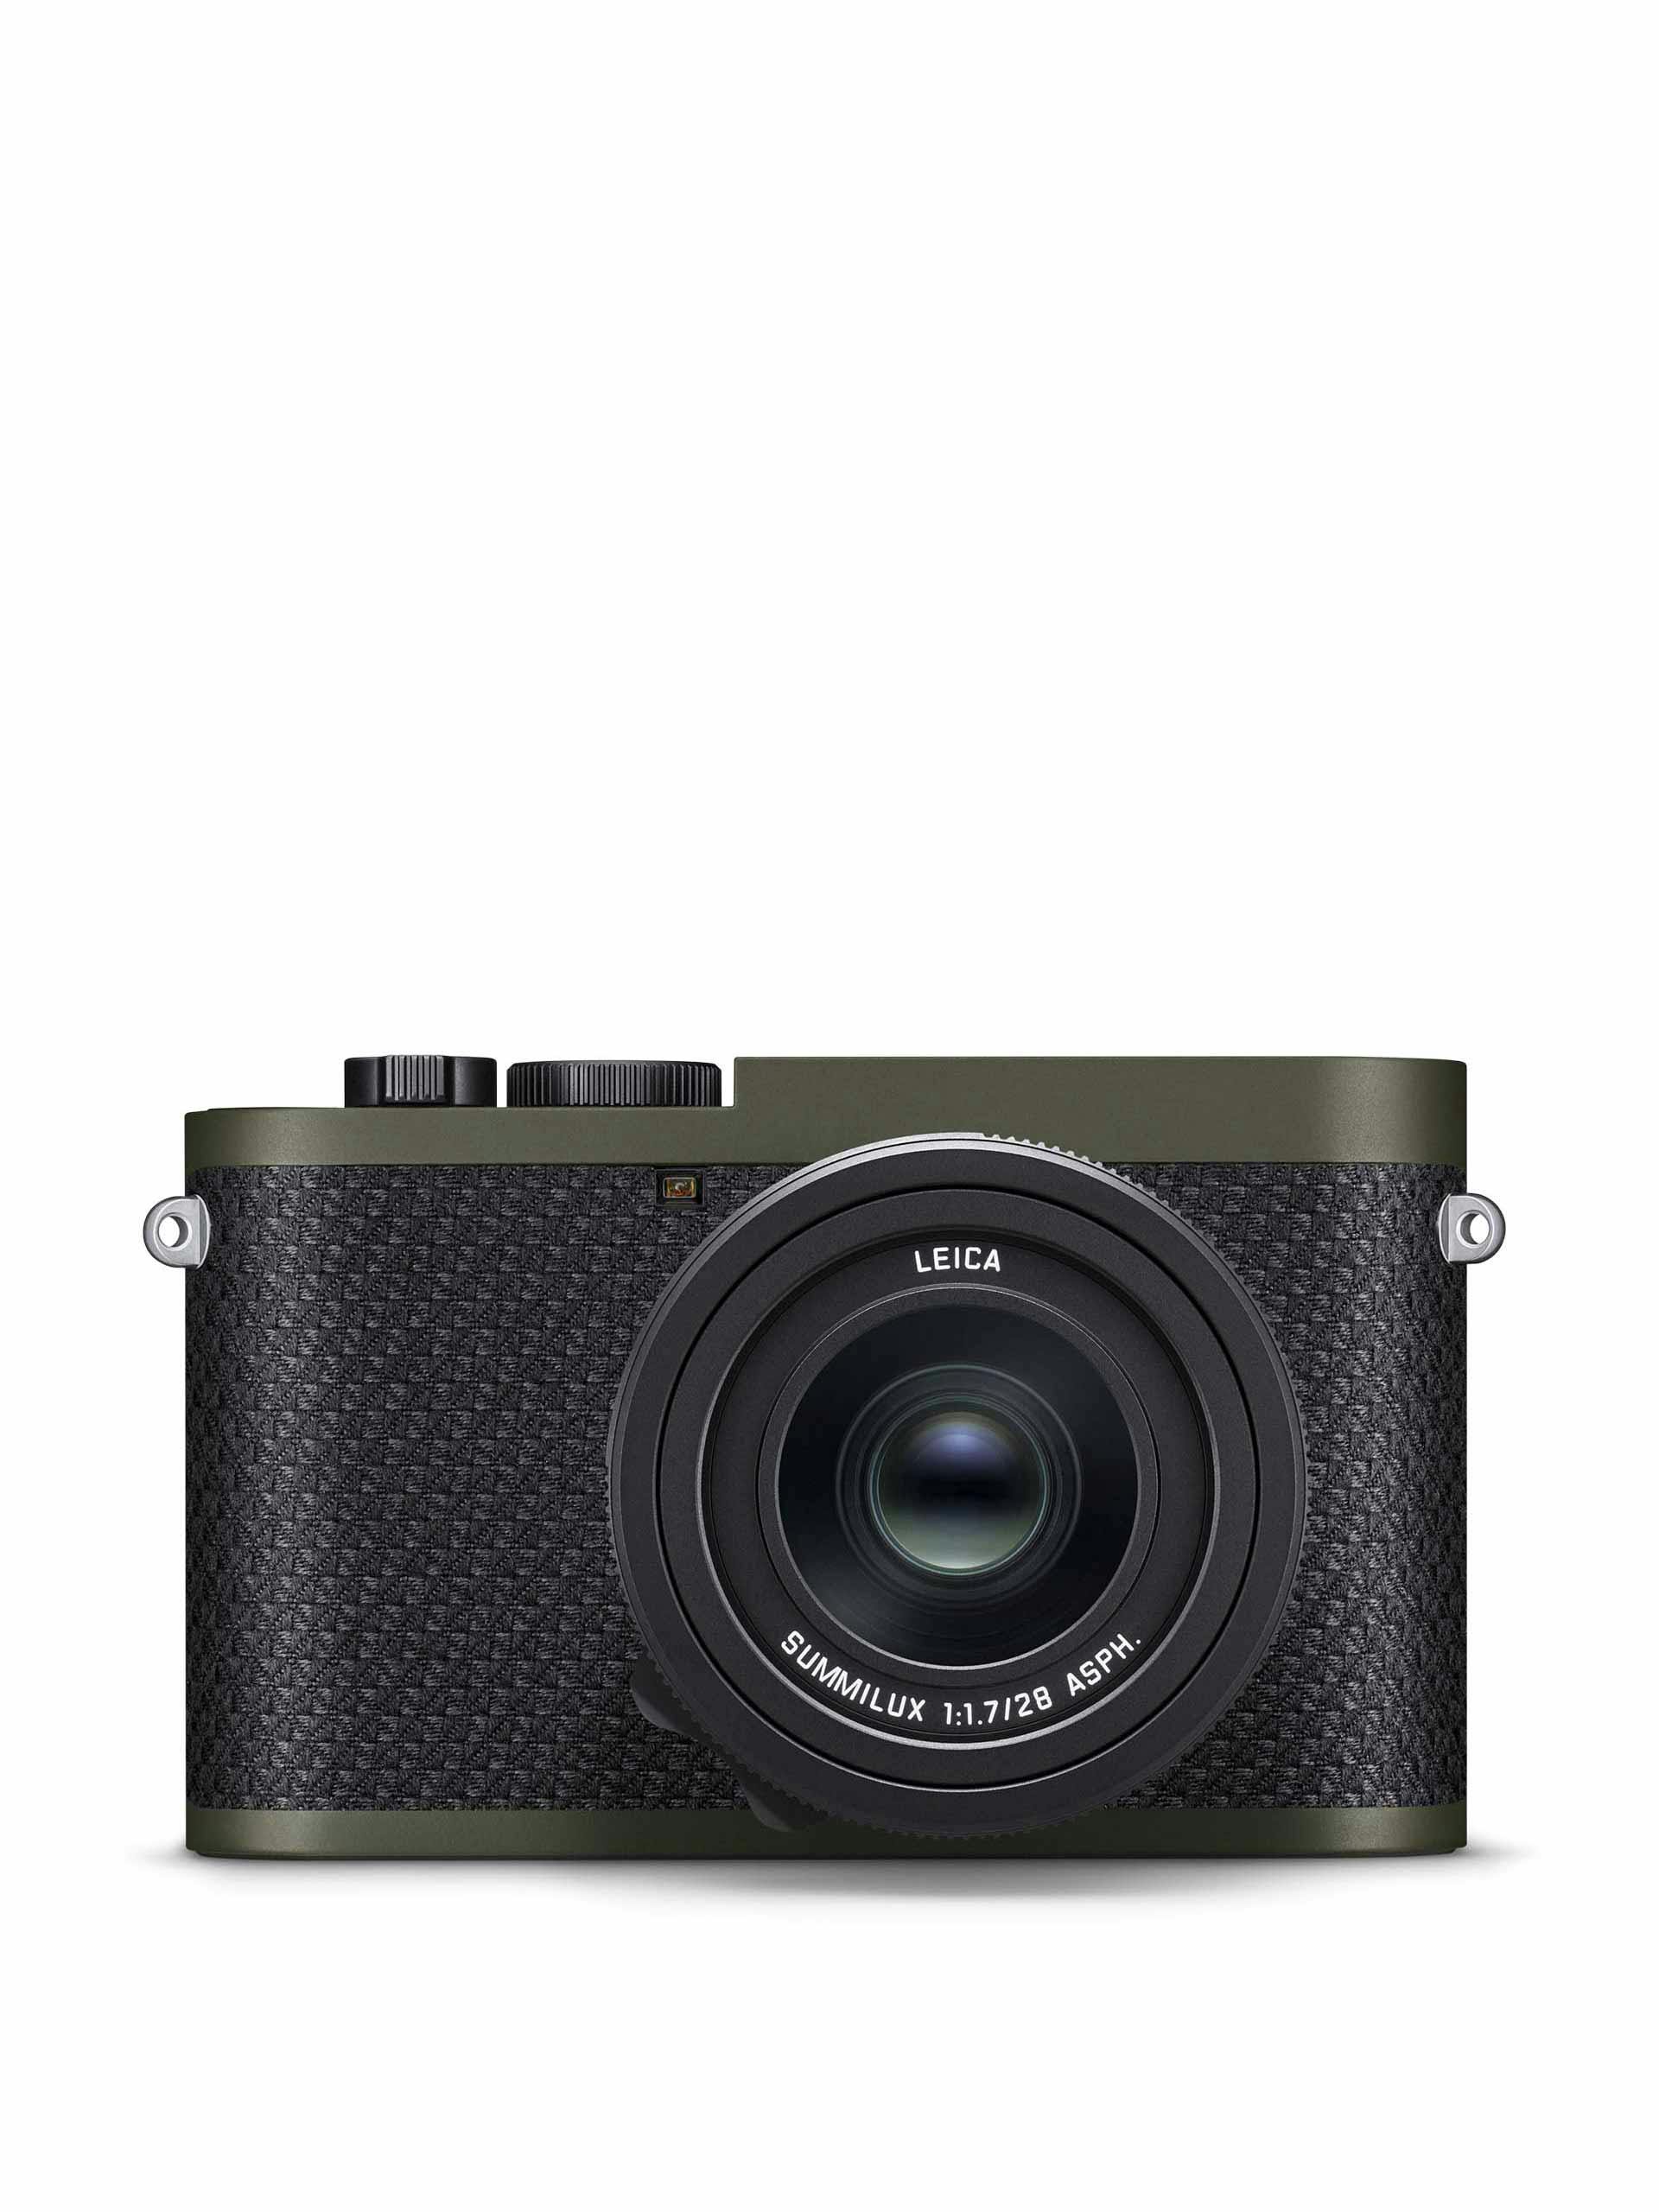 Leica Q2 "Reporter" camera